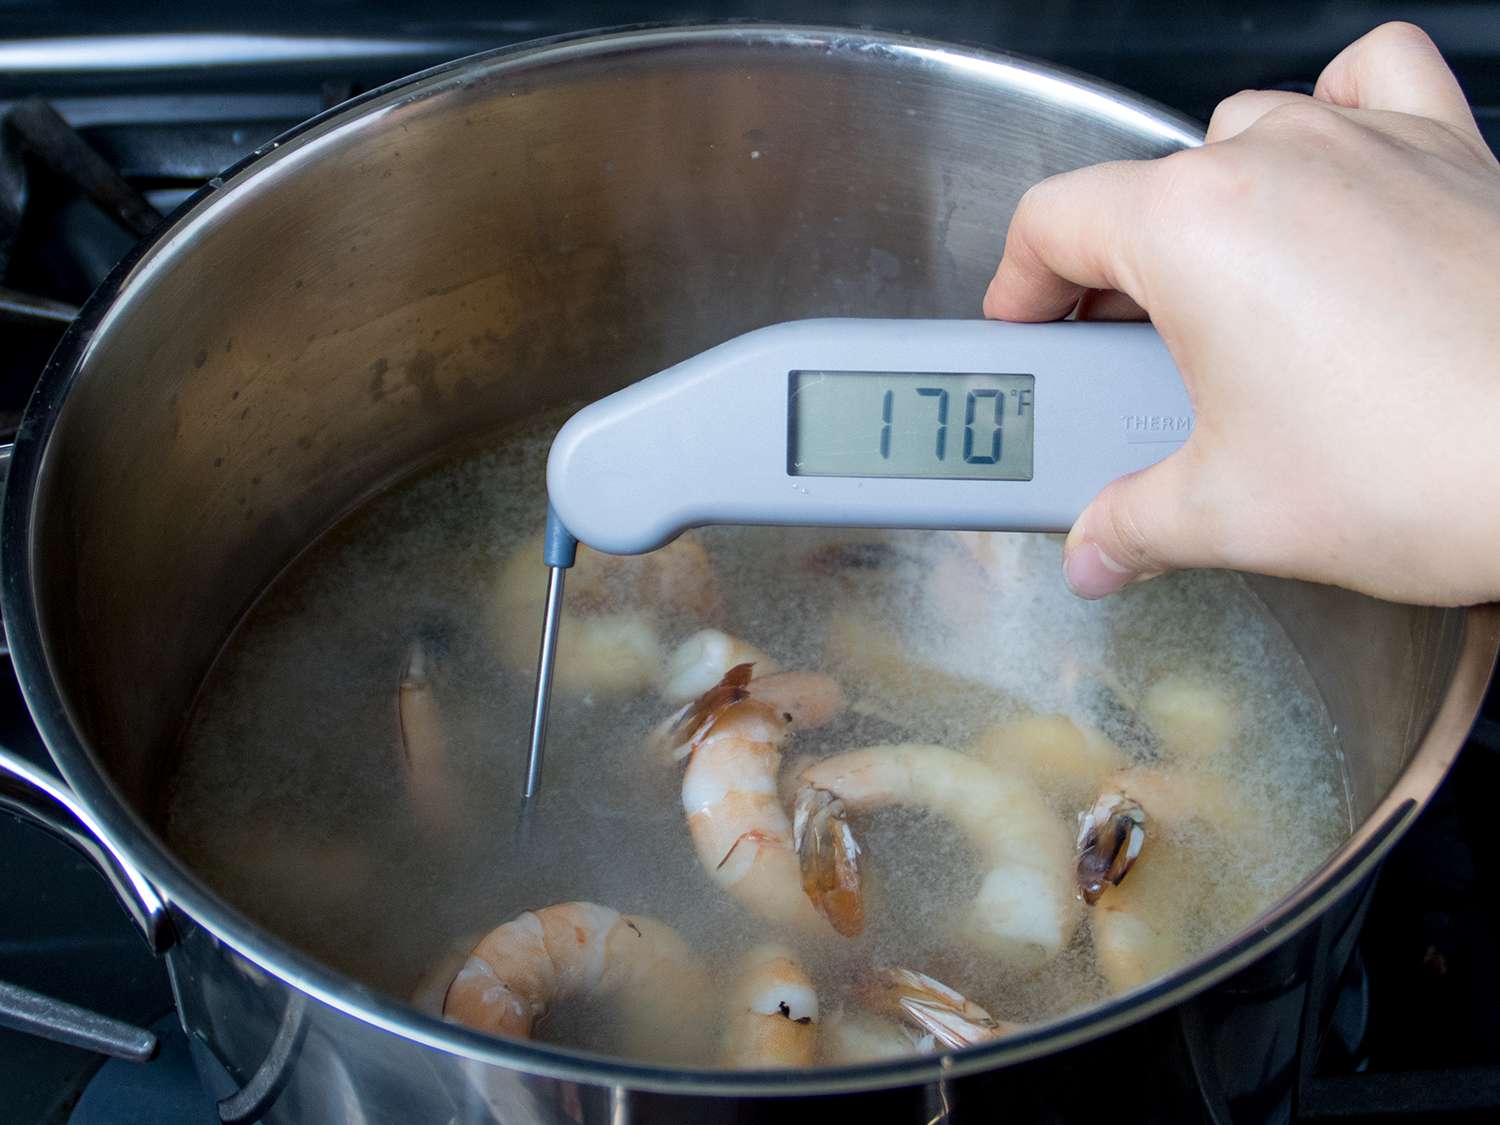 温度计显示锅里煮虾的温度为华氏170度。